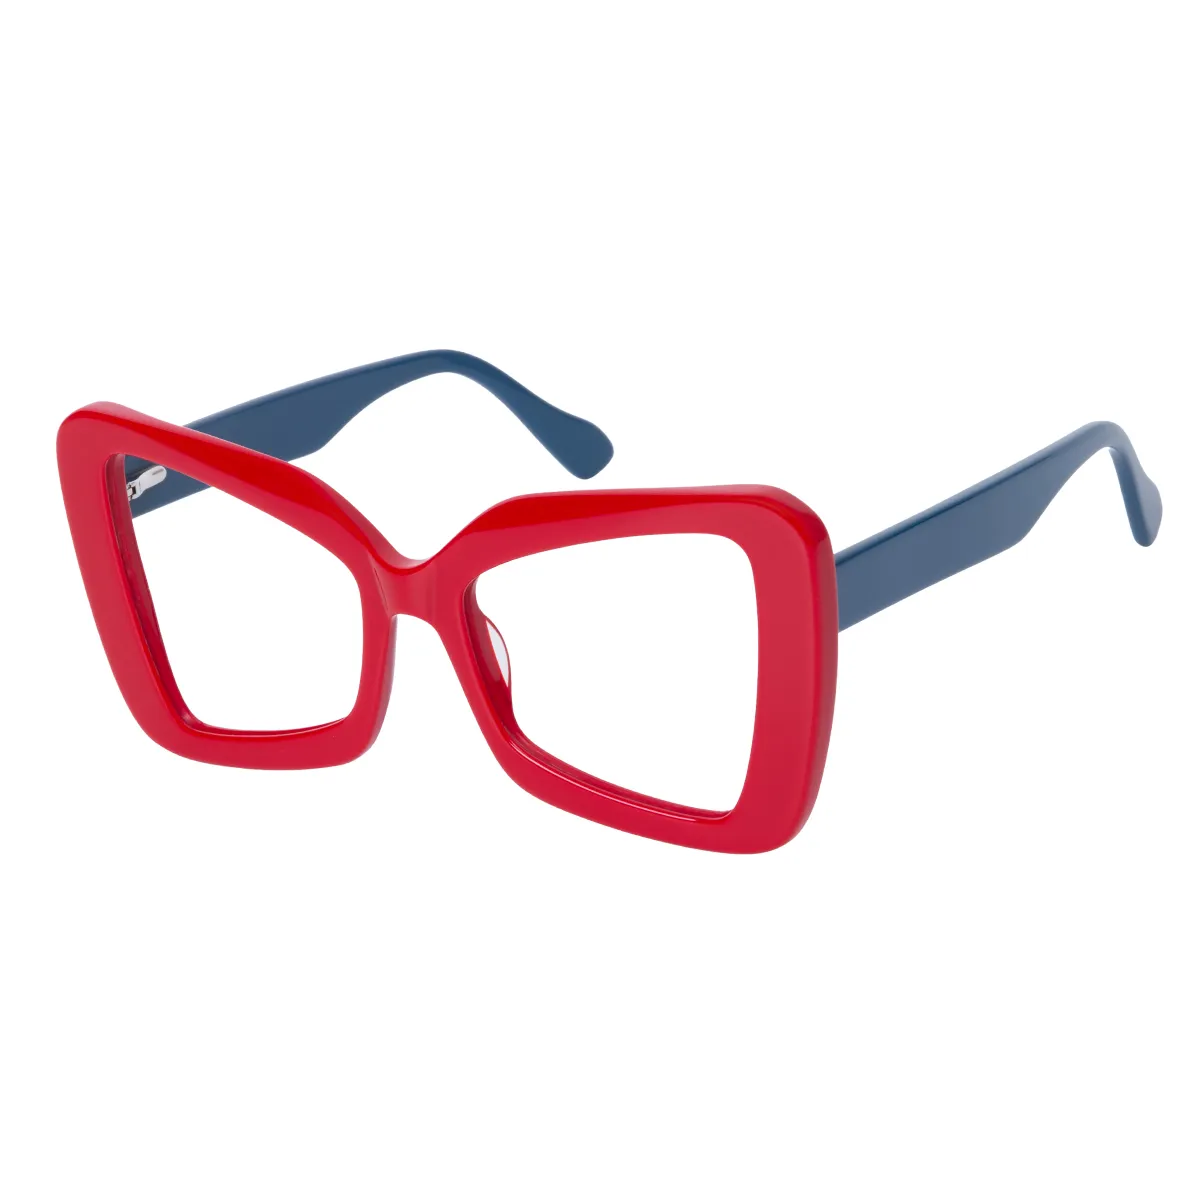 Matana - Cat-eye Red-Blue Glasses for Women